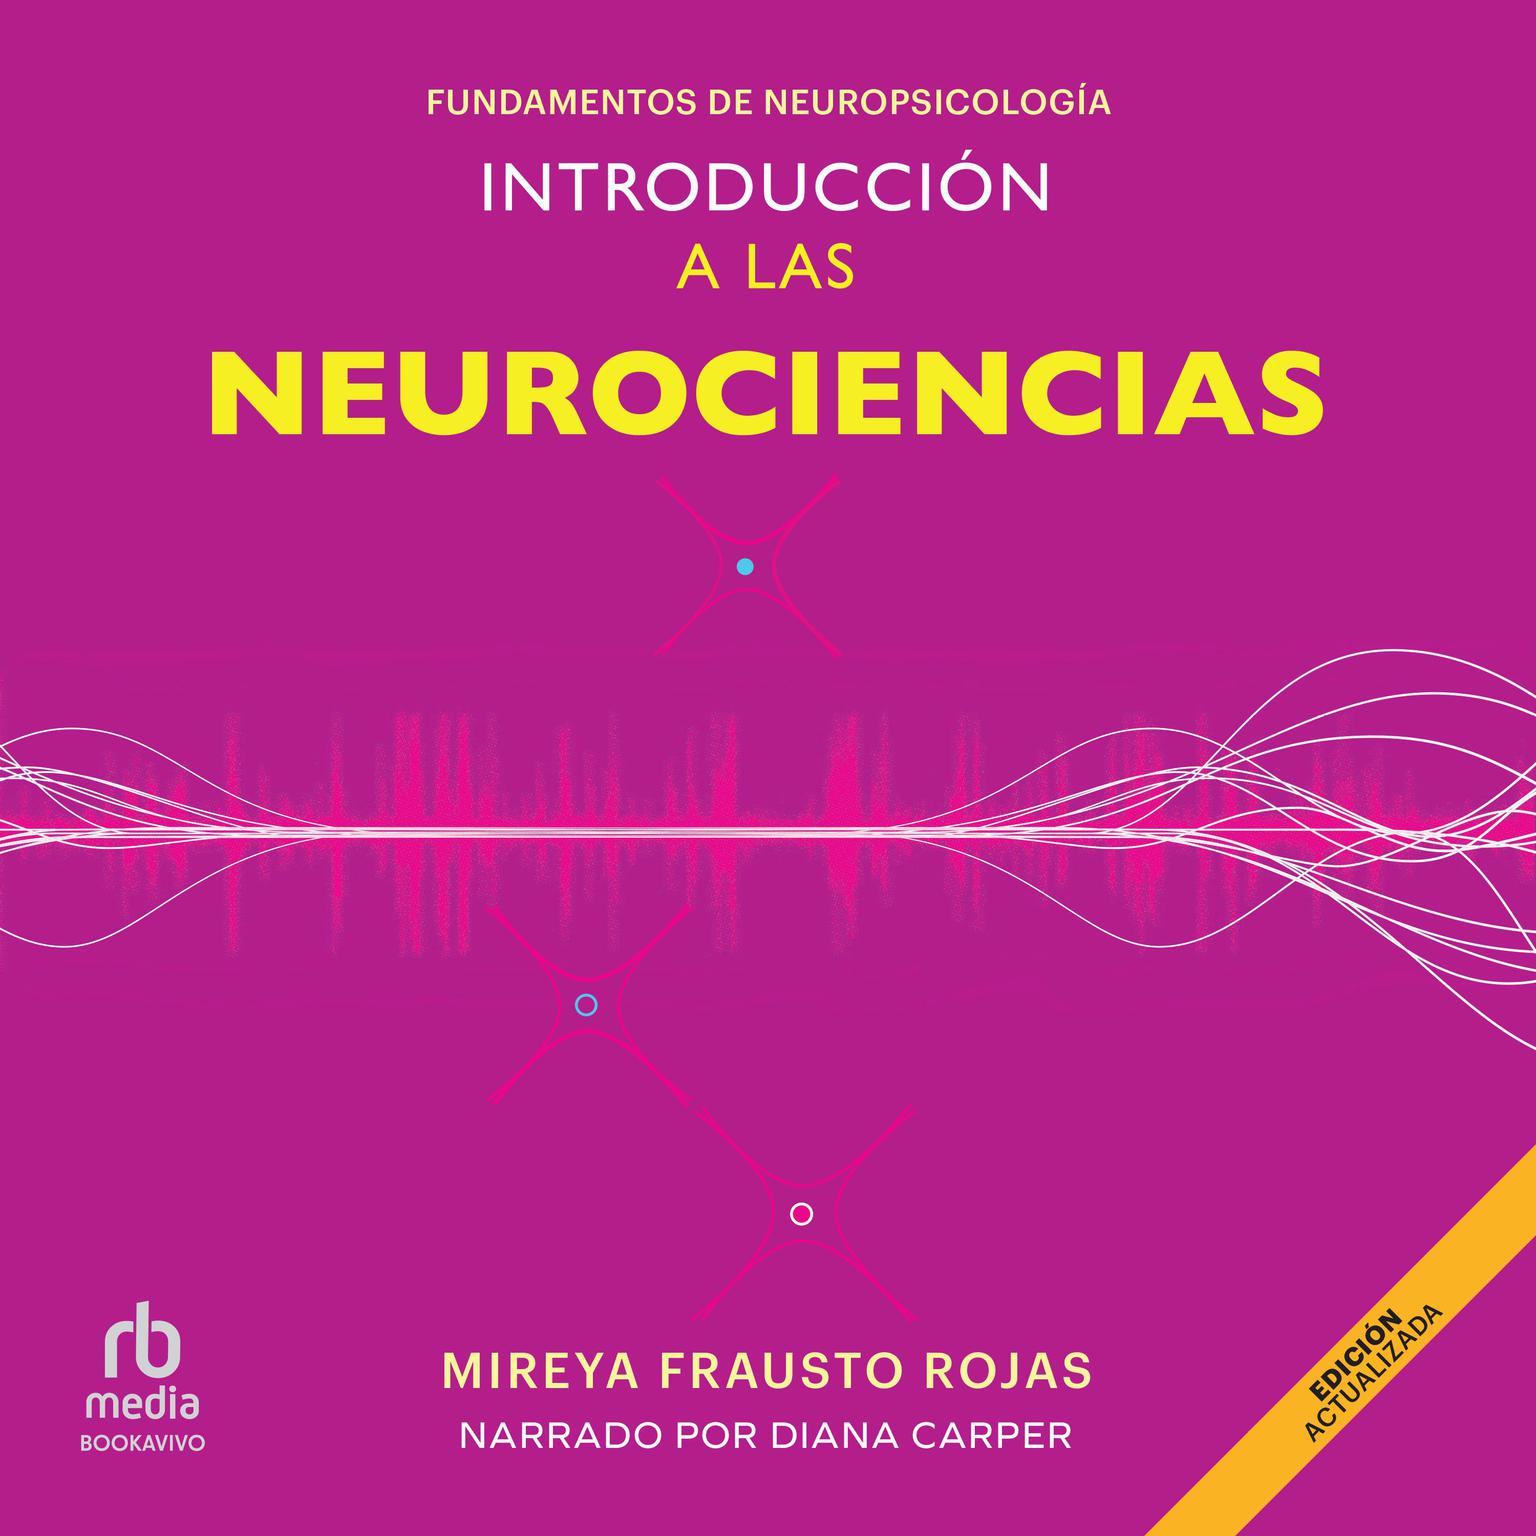 Introducción a las neurociencias: Fundamentos de neuropsicología (Fundamentals of Neuropsychology) Audiobook, by Mireya Frausto